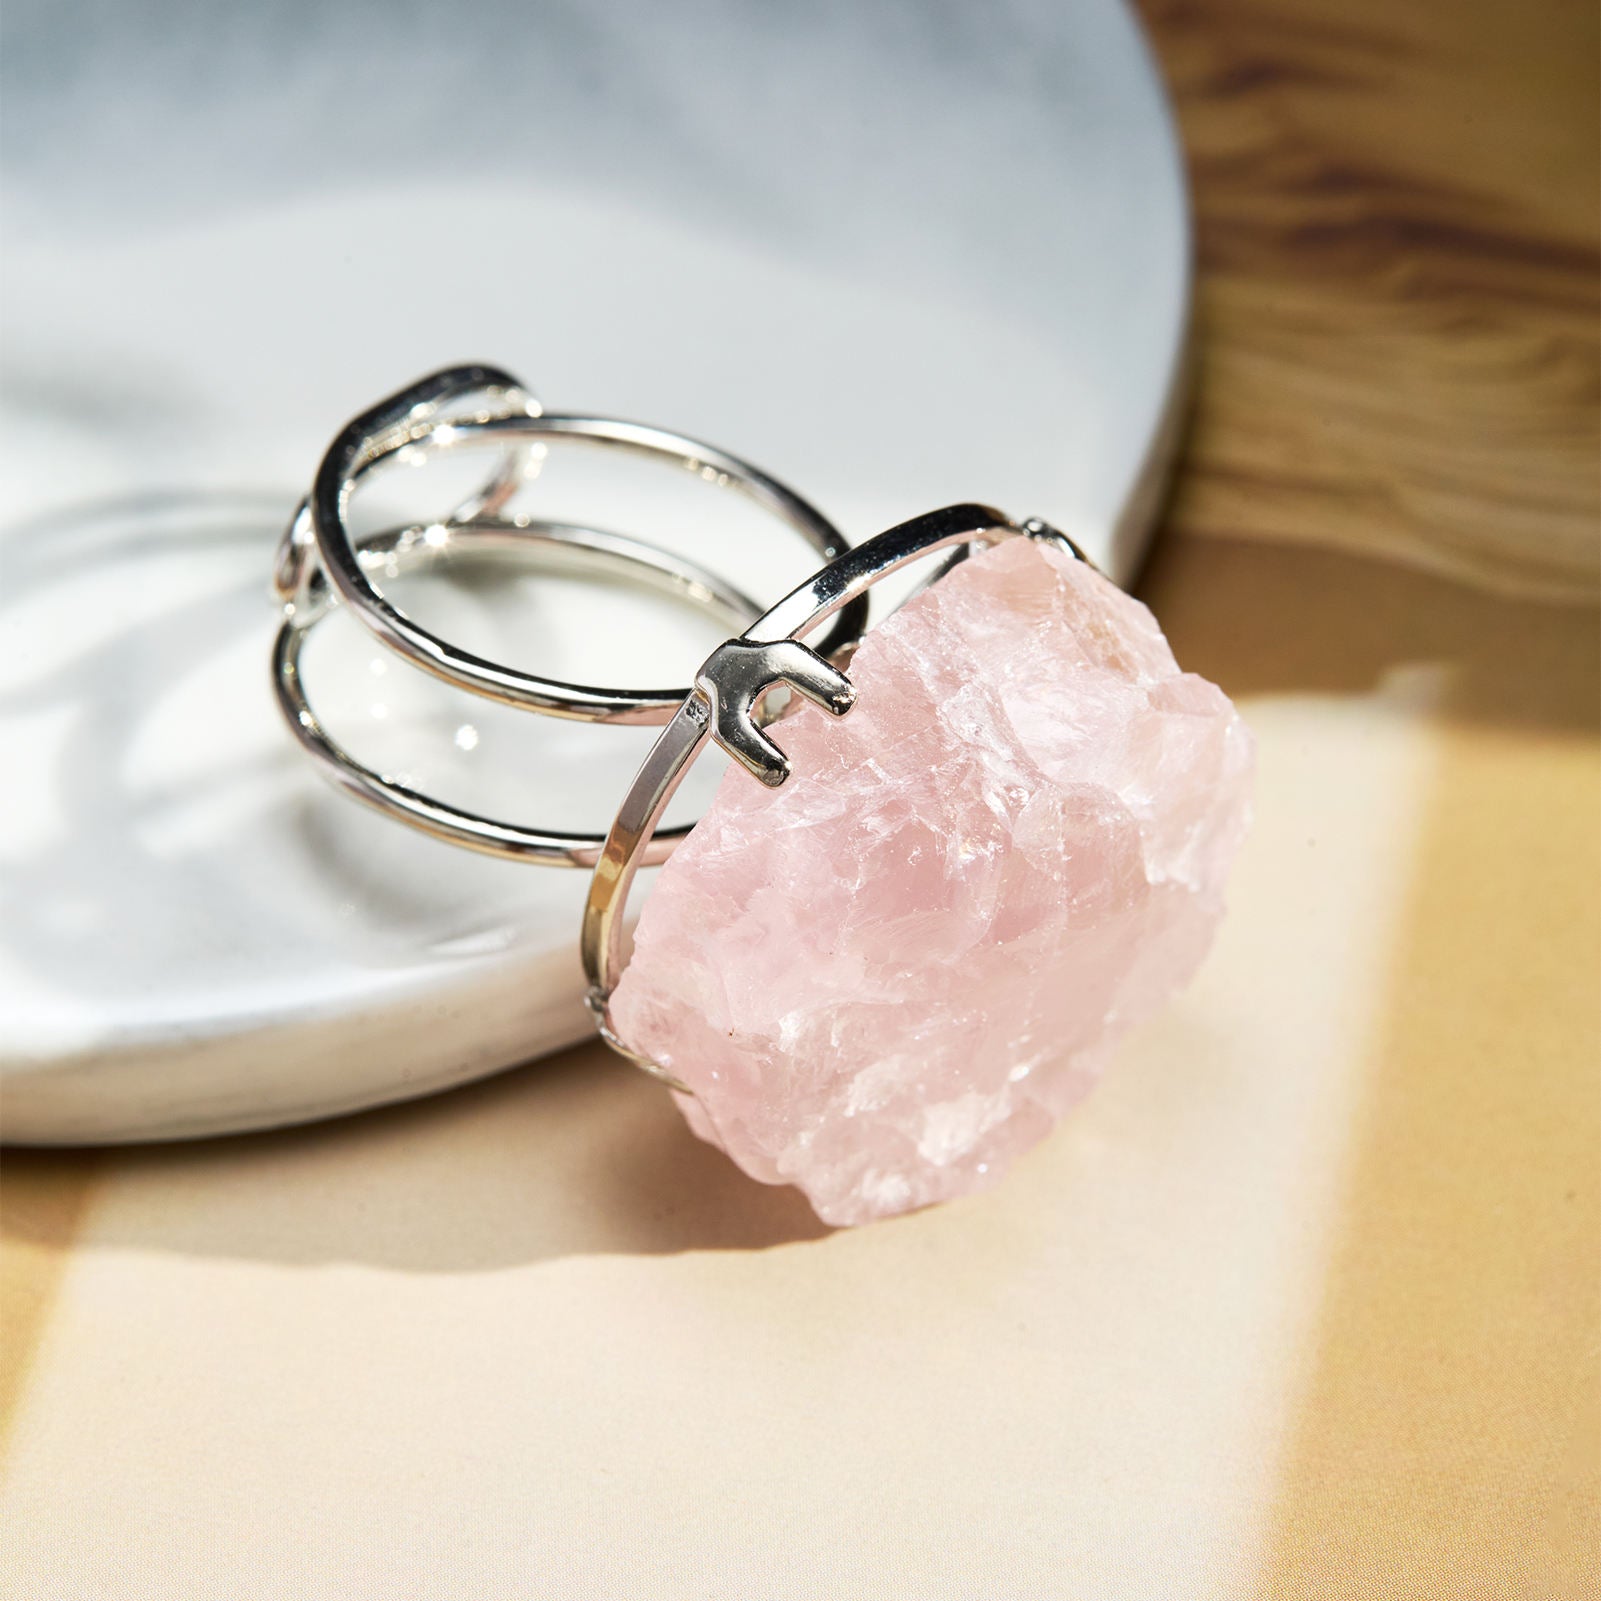 Rose Quartz Chunky Ring for Love & Relationships